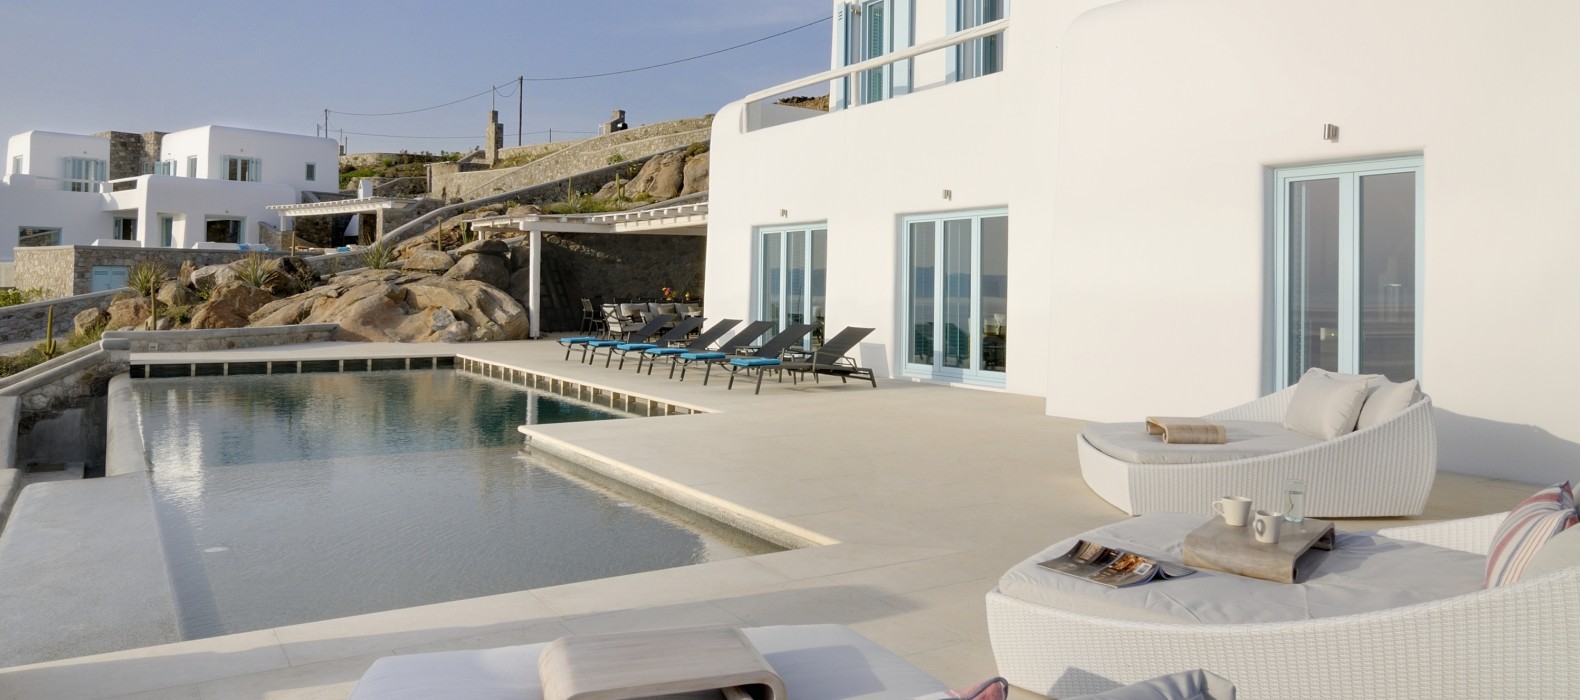 Exterior area with pool of Villa Sineria in Mykonos